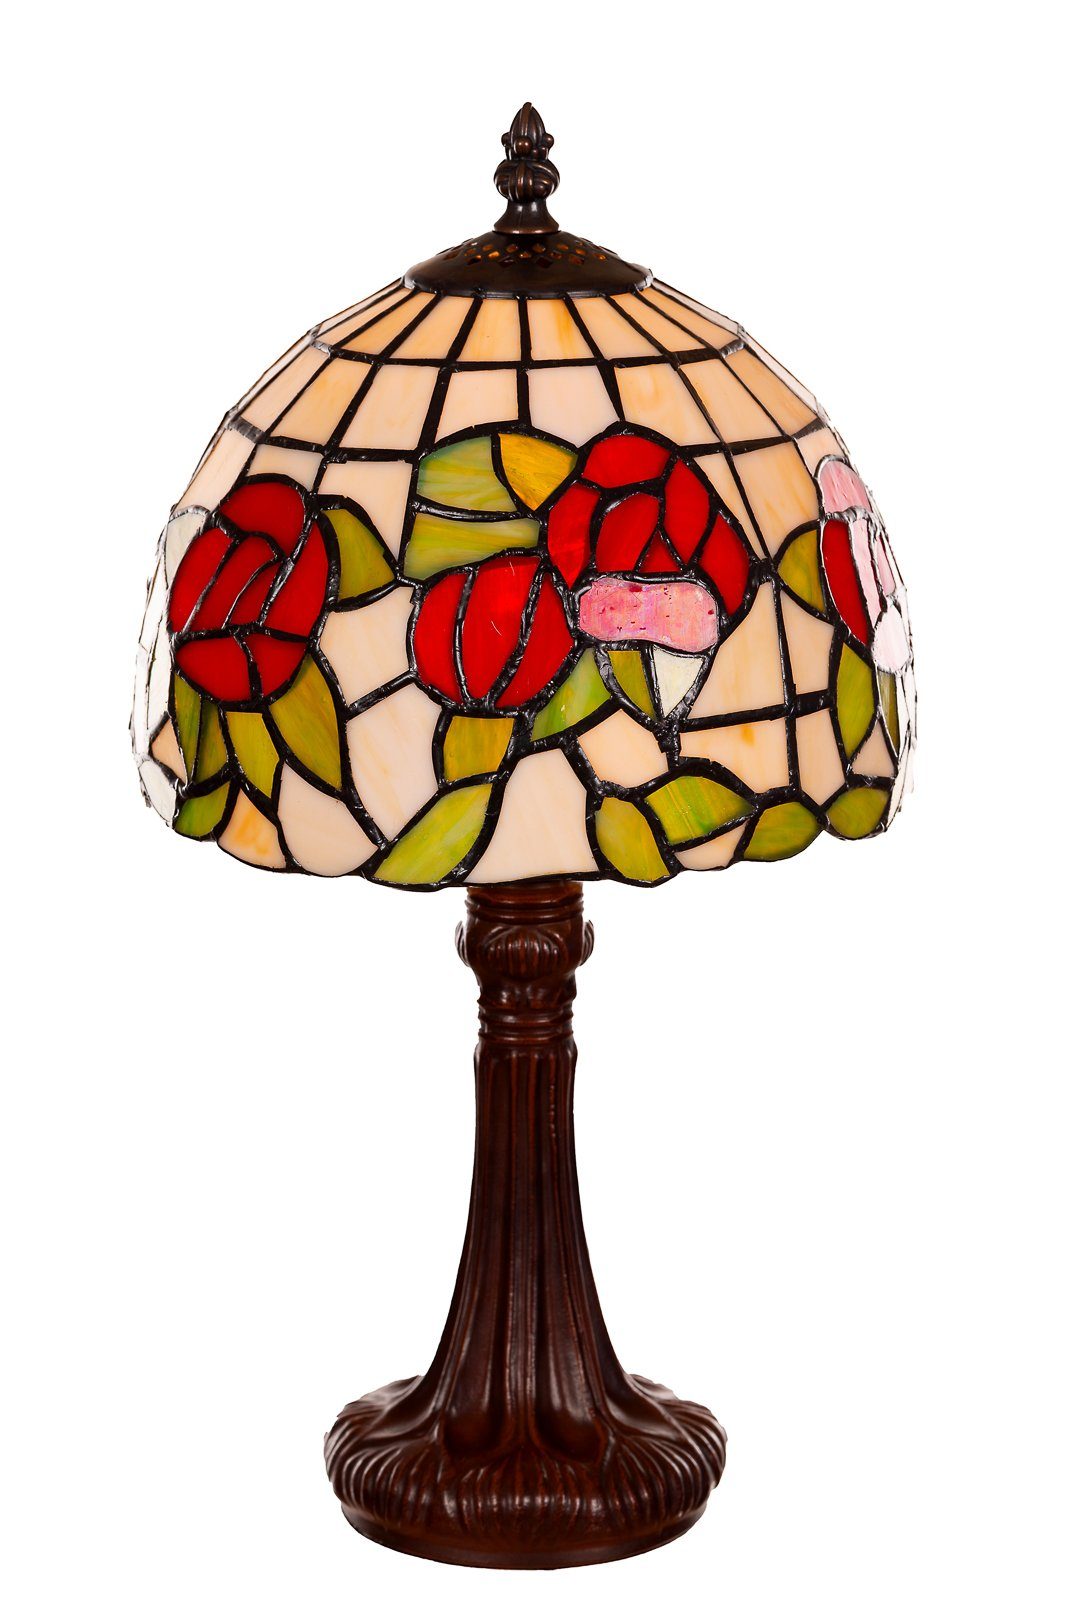 Tiff149 Birendy Rosen Stehlampe Tischlampe Lampe BIRENDY Style Tiffany Motiv